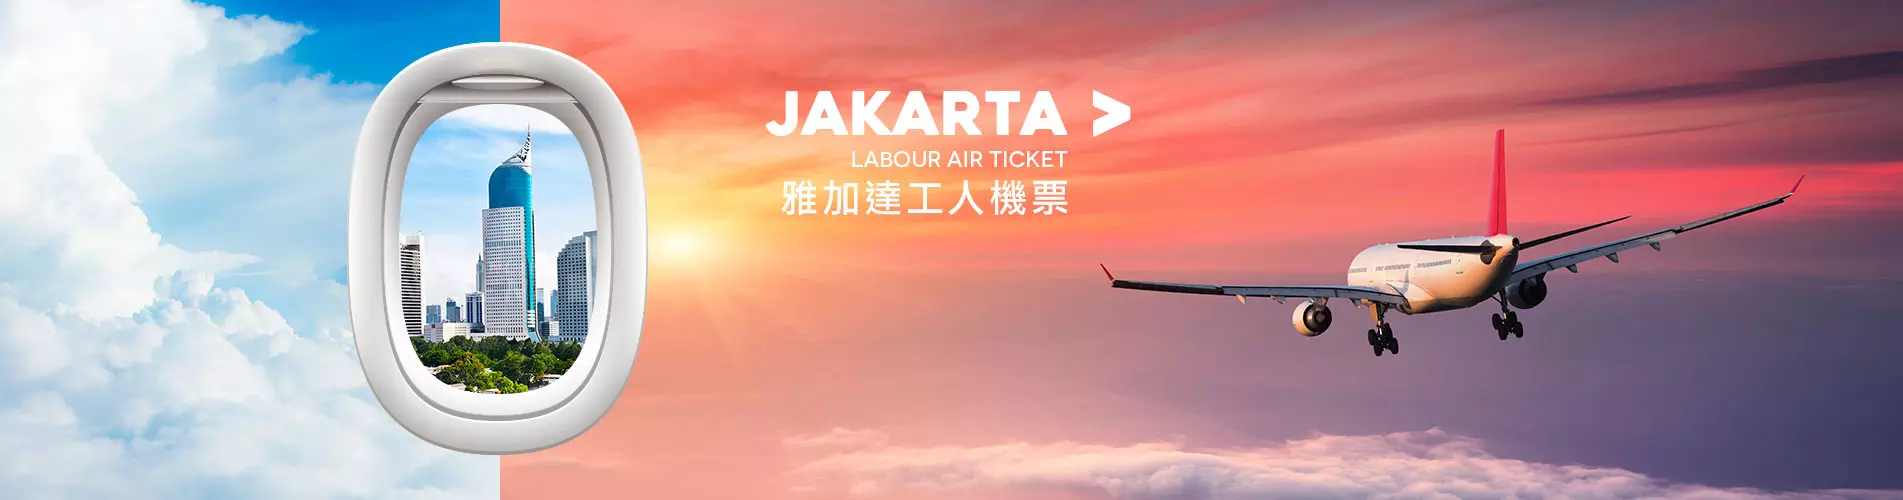 雅加達工人機票 Jakarta Labour Air Ticket